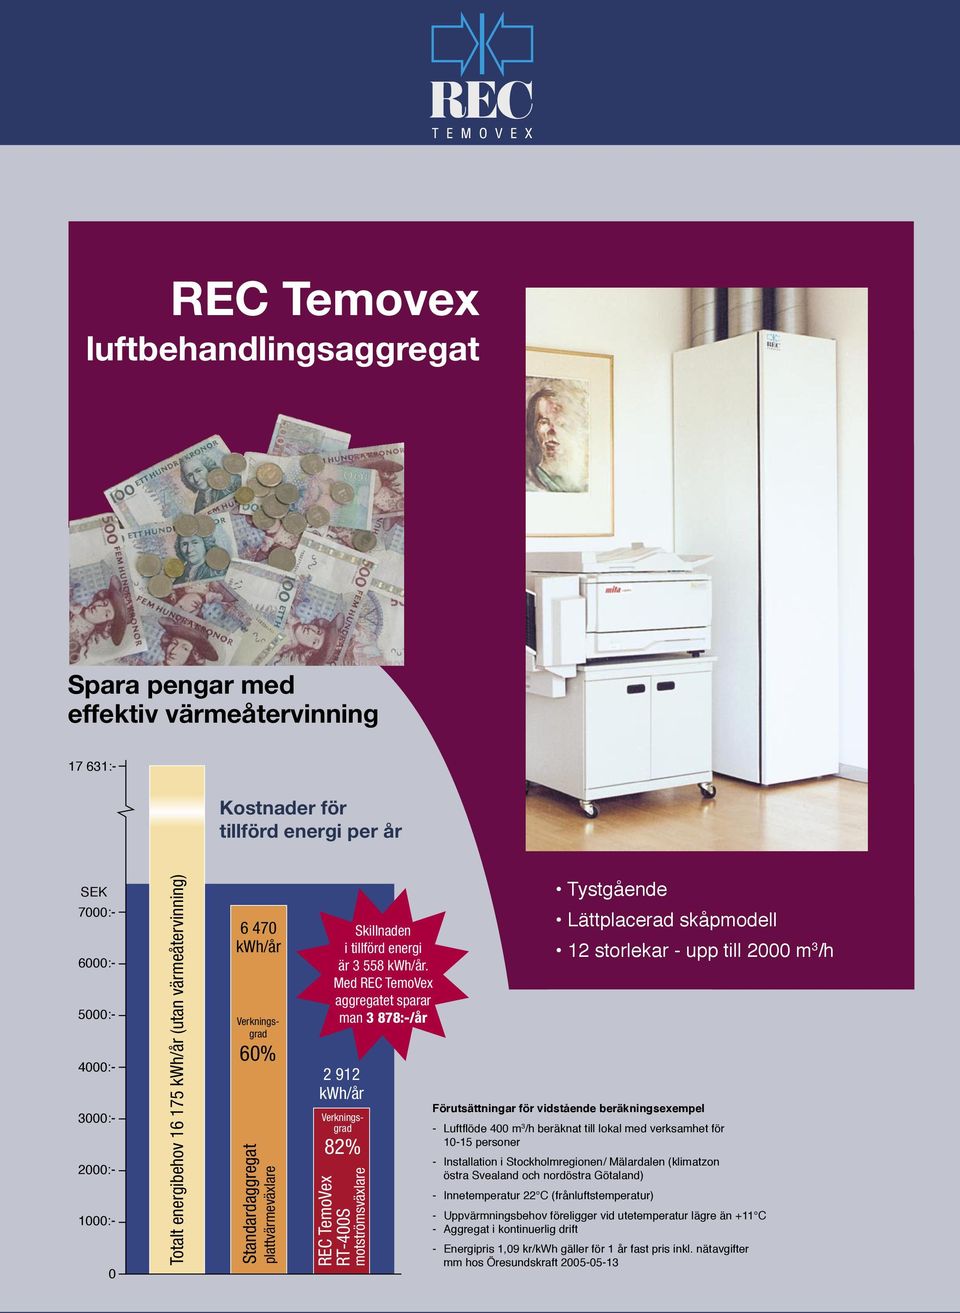 Med REC TemoVex aggregatet sparar man 878:-/år 9 kwh/år Verkningsgrad 8% REC TemoVex RT-00S motströmsväxlare Tystgående Förutsättningar för vidstående beräkningsexempel - Luftflöde 00 m /h beräknat